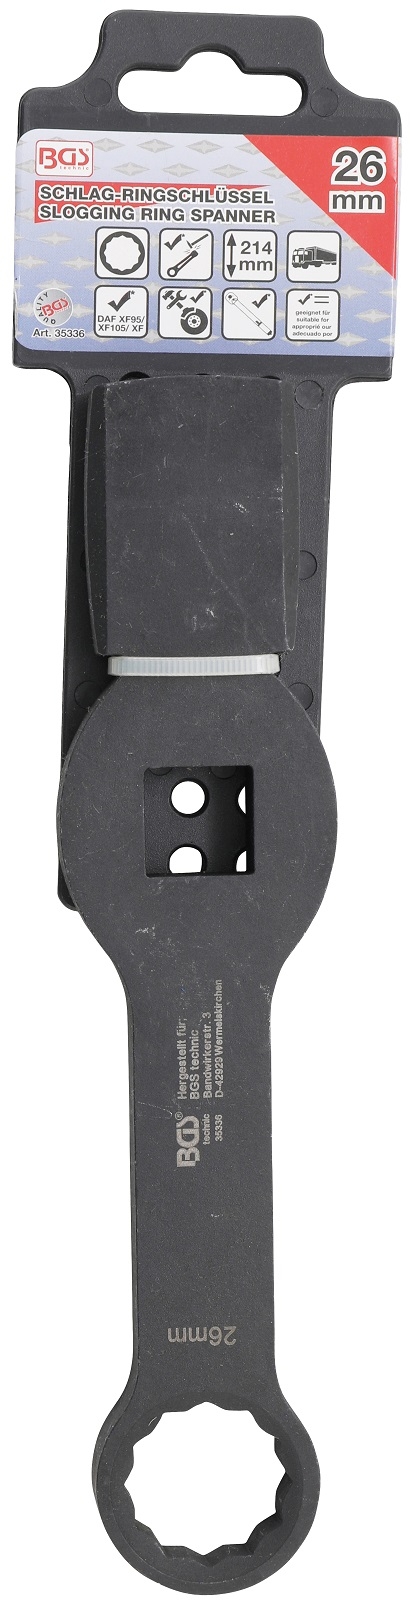 Schlag-Ringschlüssel | Zwölfkant | mit 2 Schlagflächen | SW 26 mm - BGS 35336